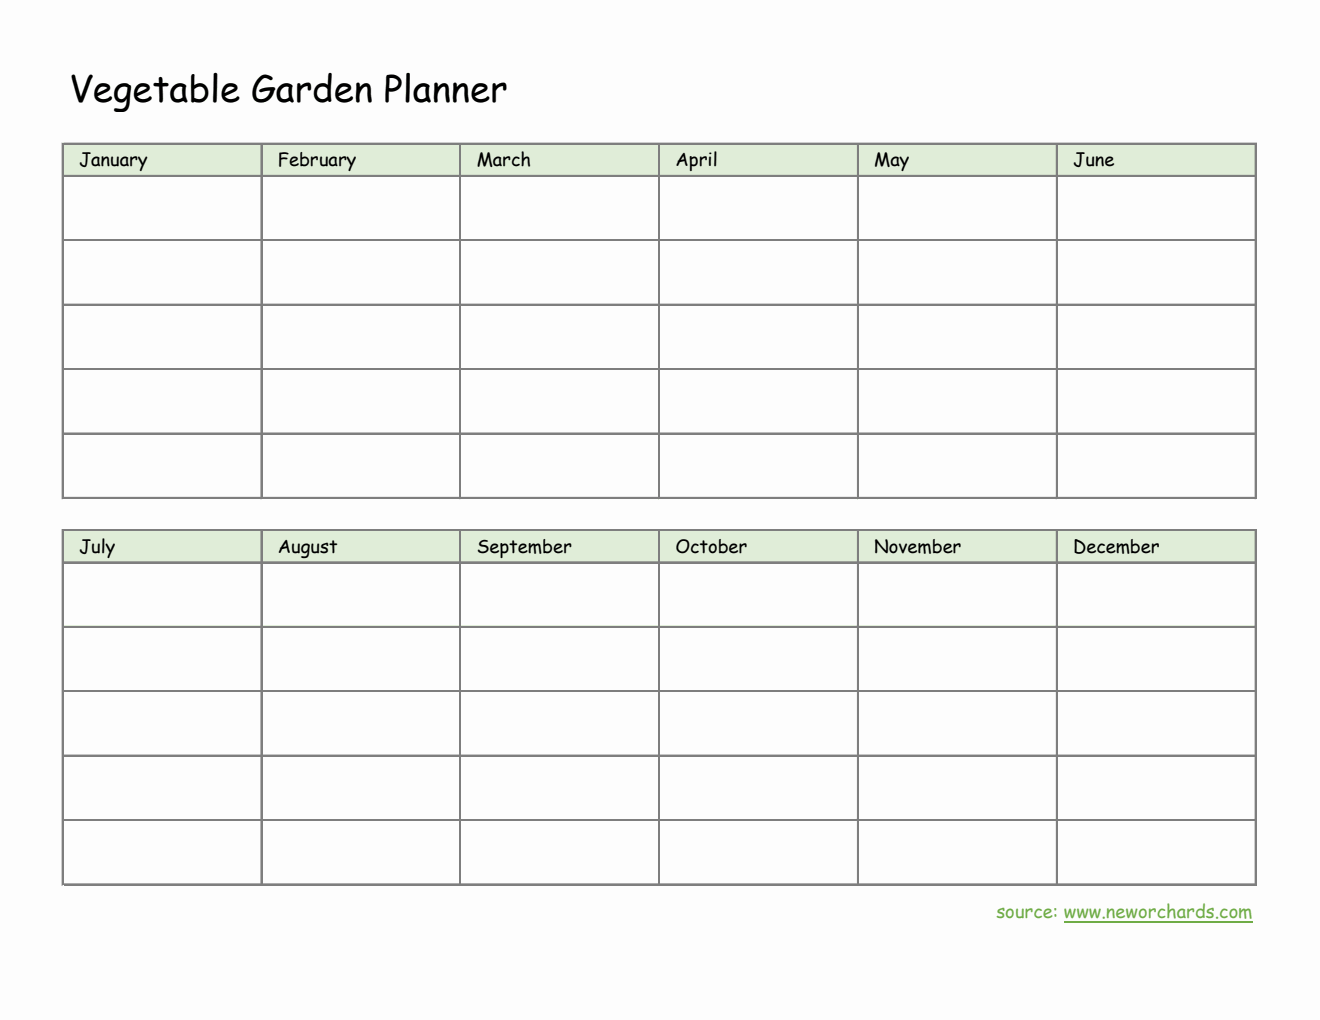  Vegetable Garden Planner in Excel